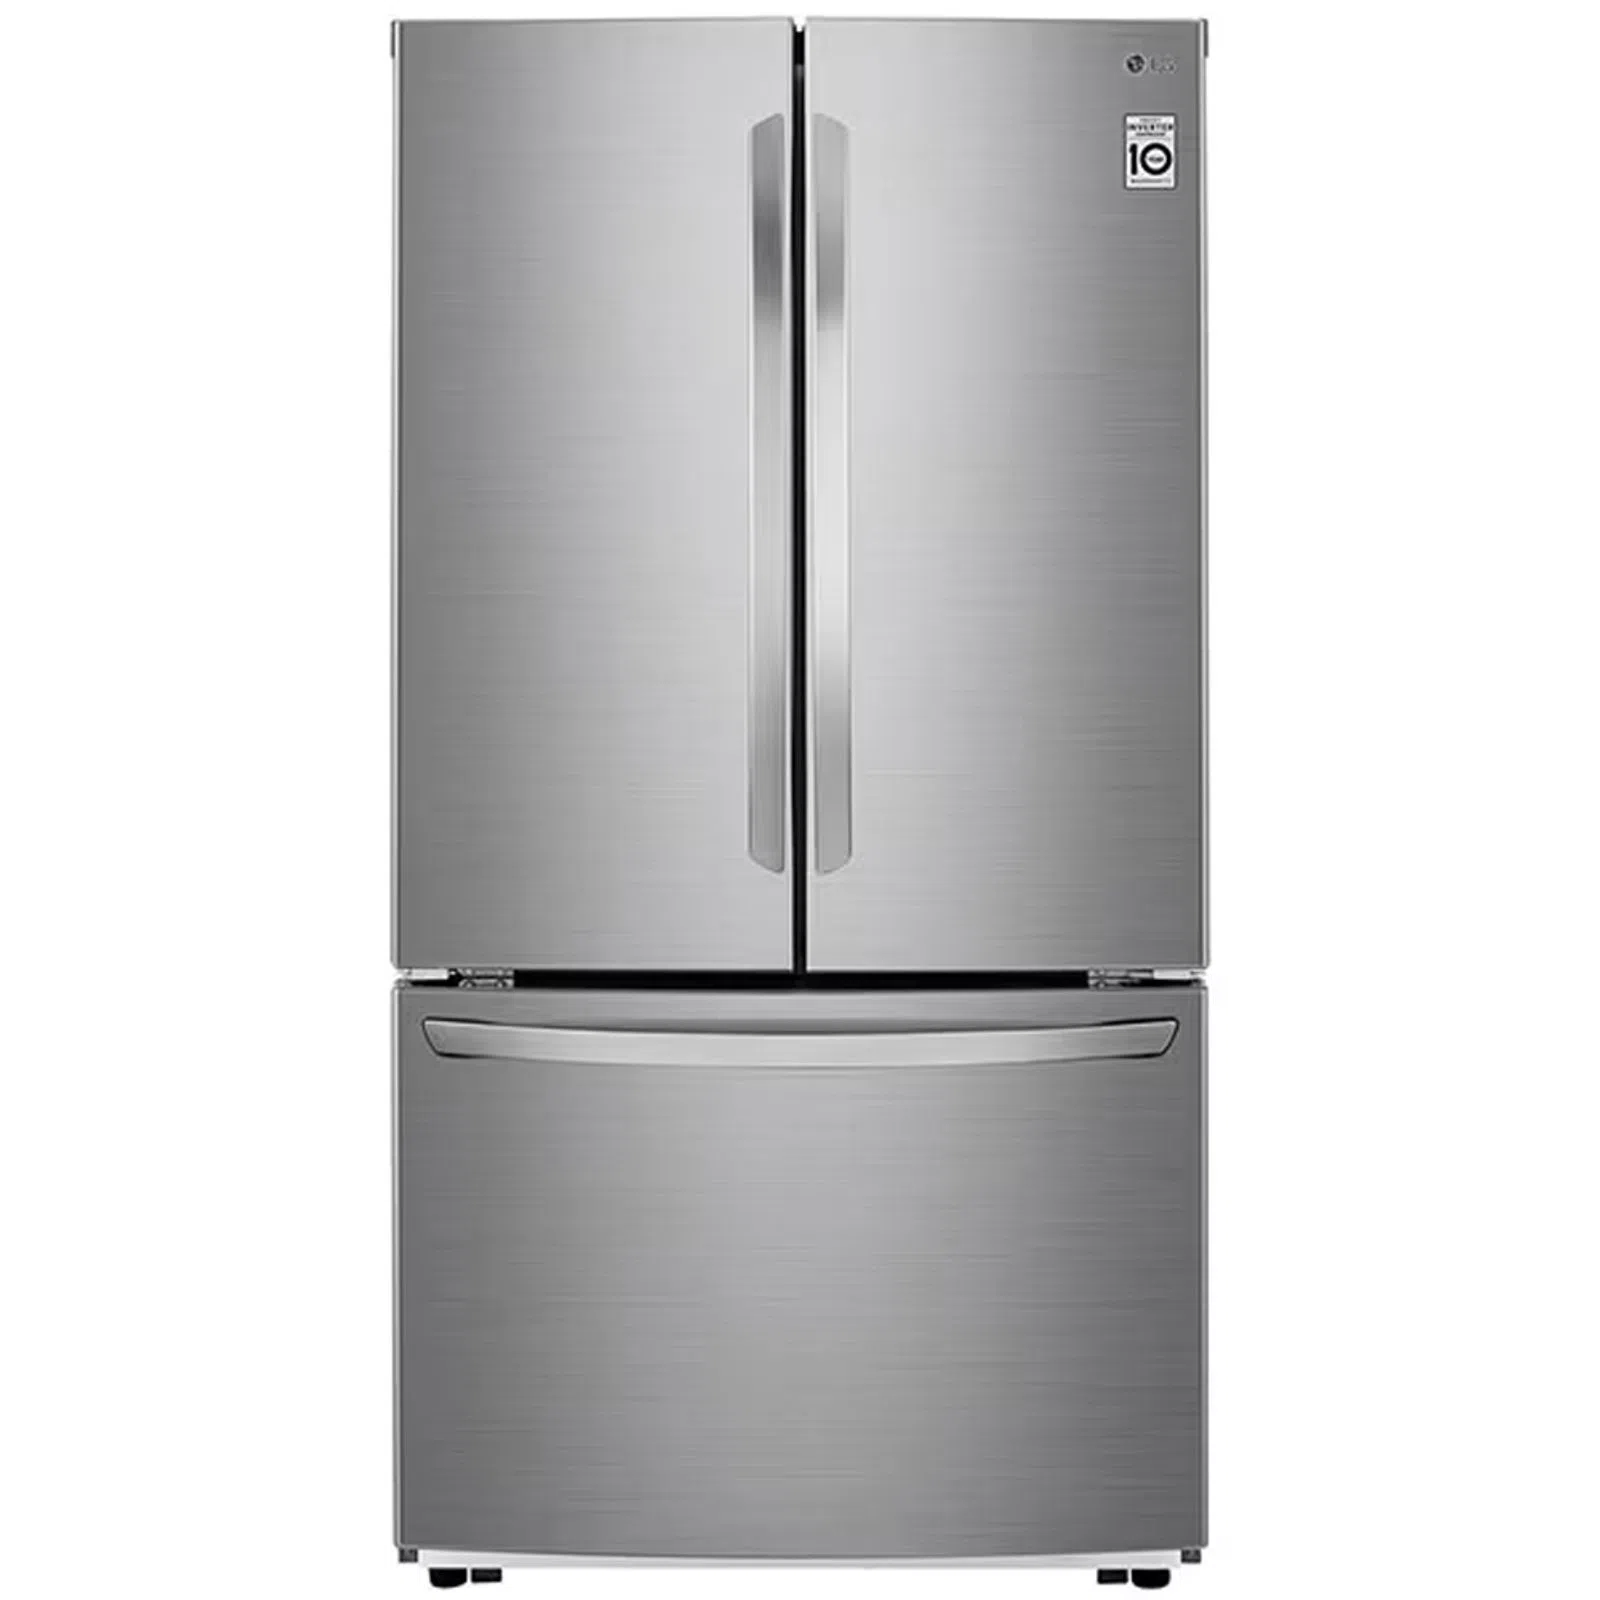 Refrigerador LG French Door Gran Capacidad 816 Litros